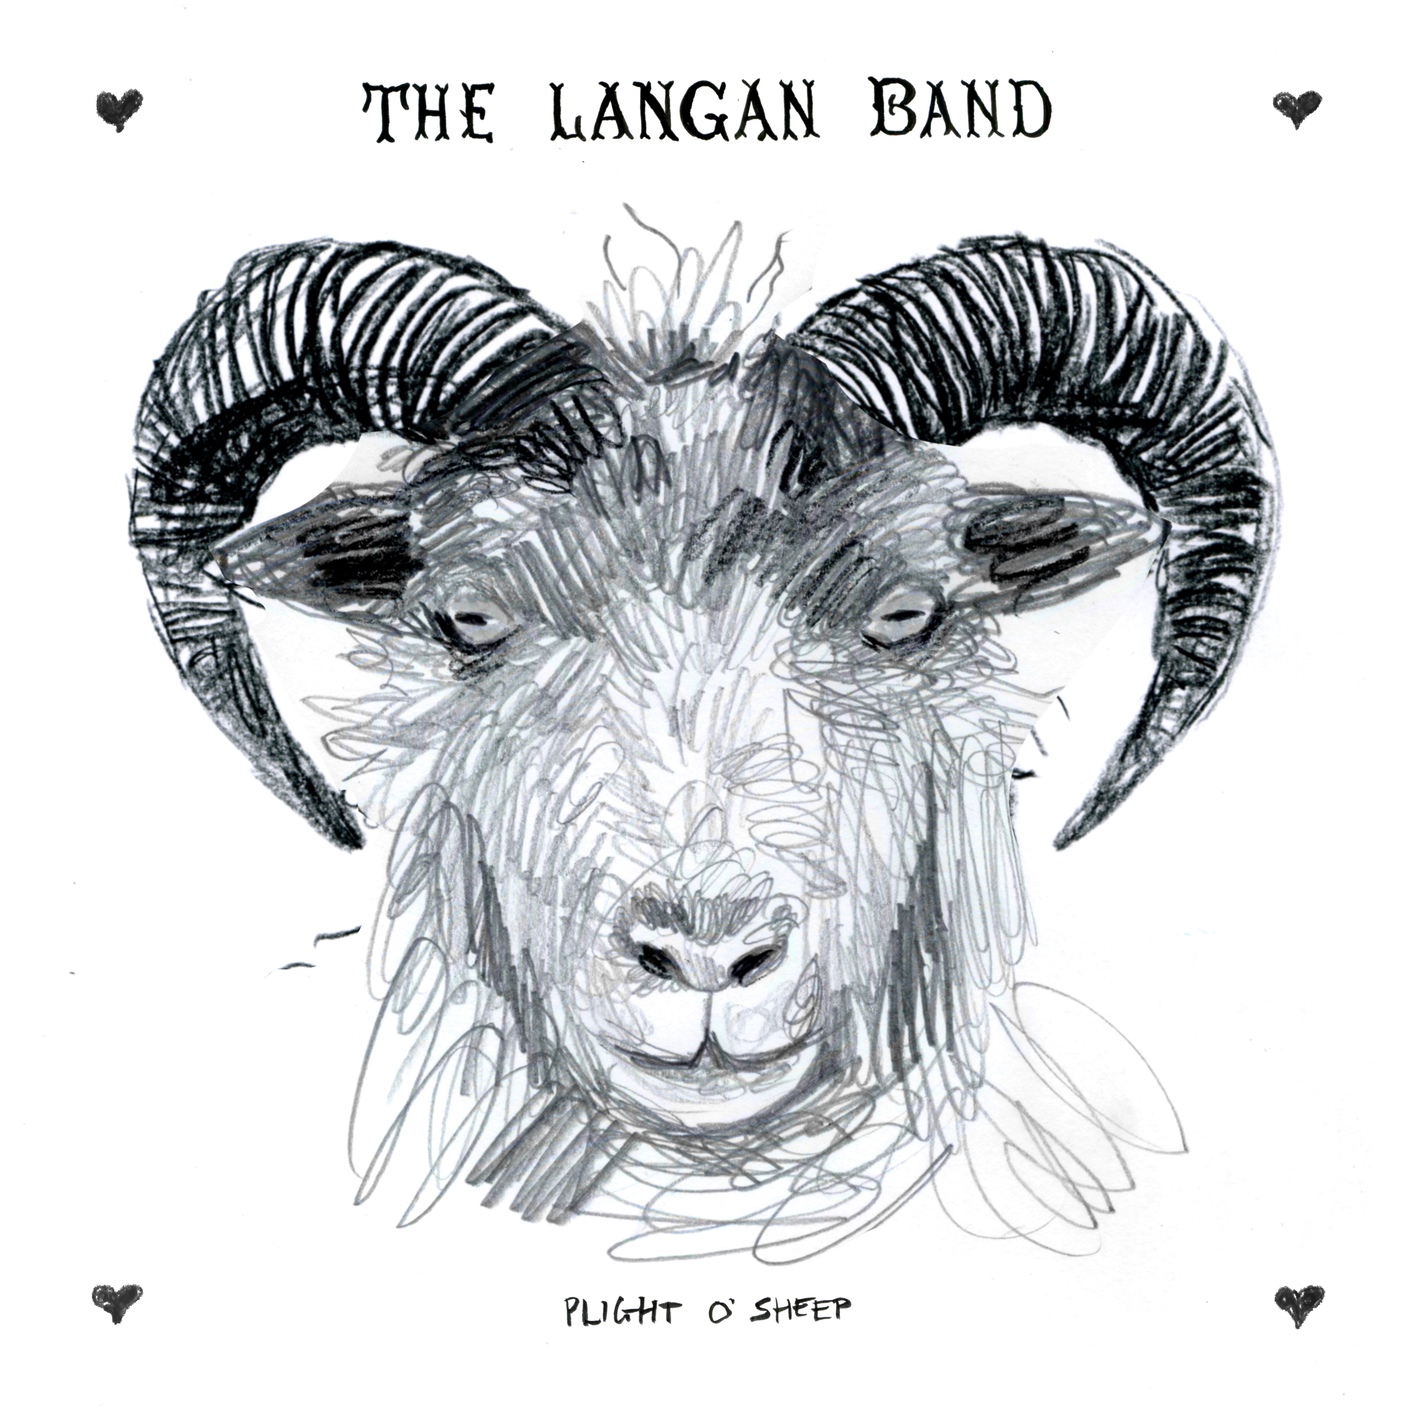 The Langan Band - 2023 - Plight o’ Sheep (24-44.1)